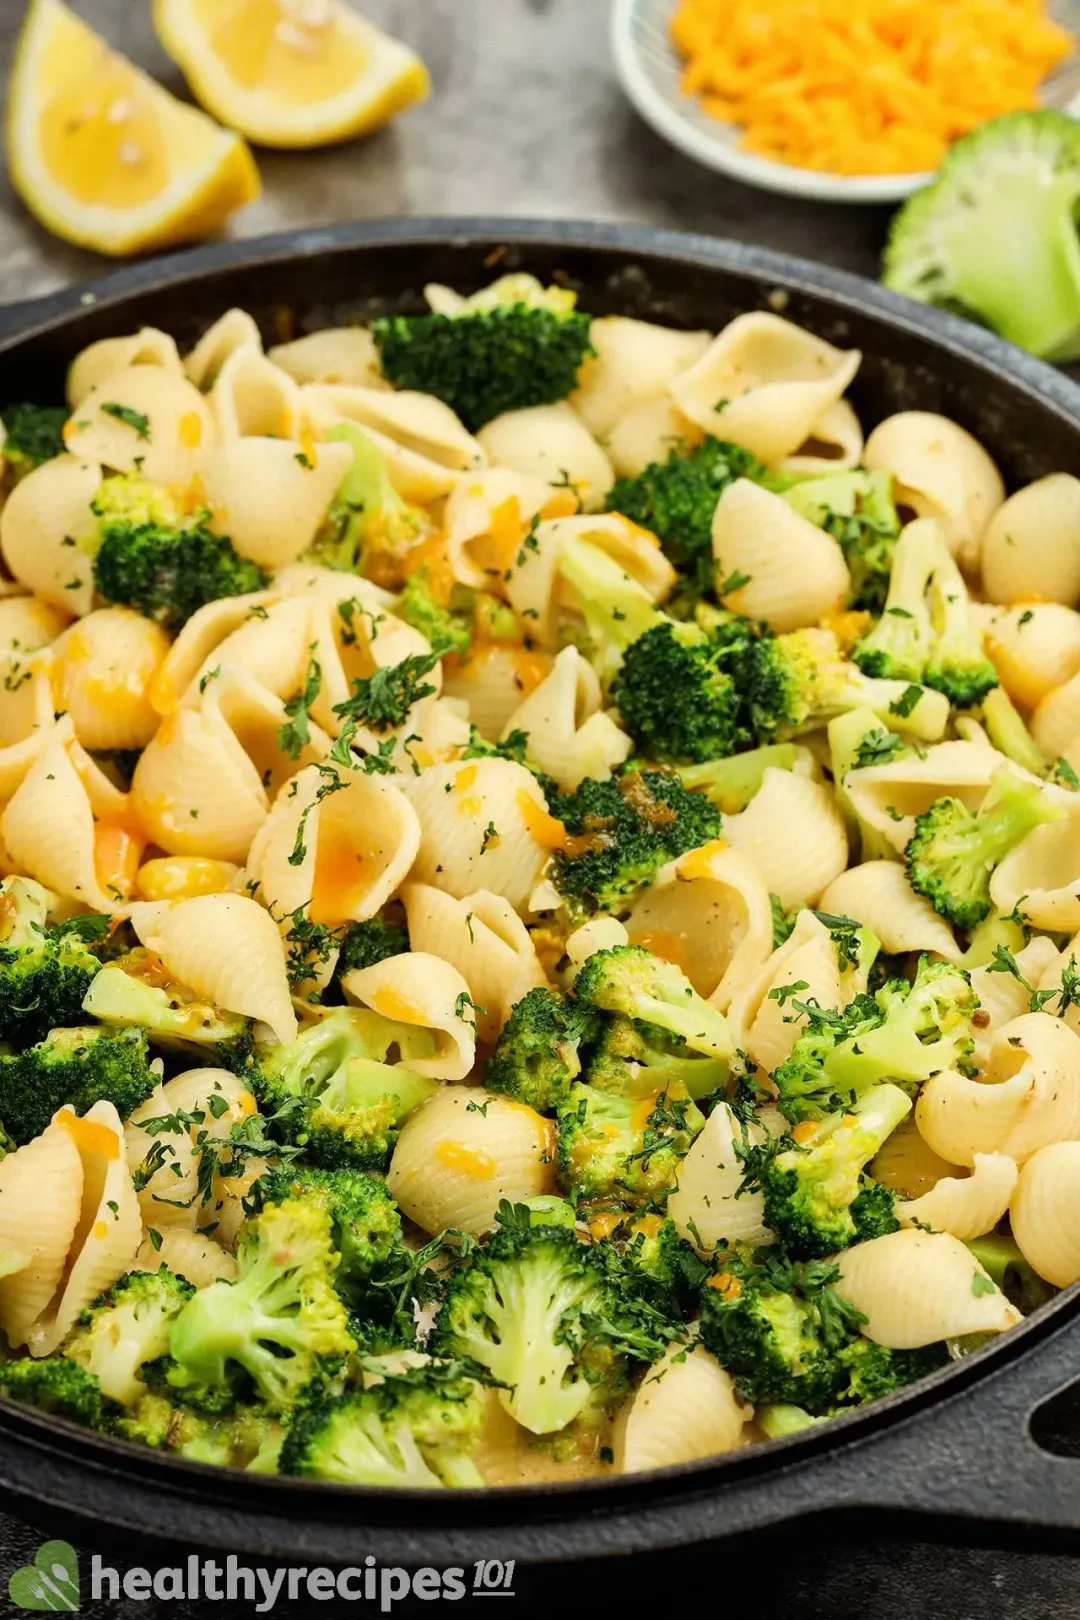 Is Broccoli Pasta Healthy